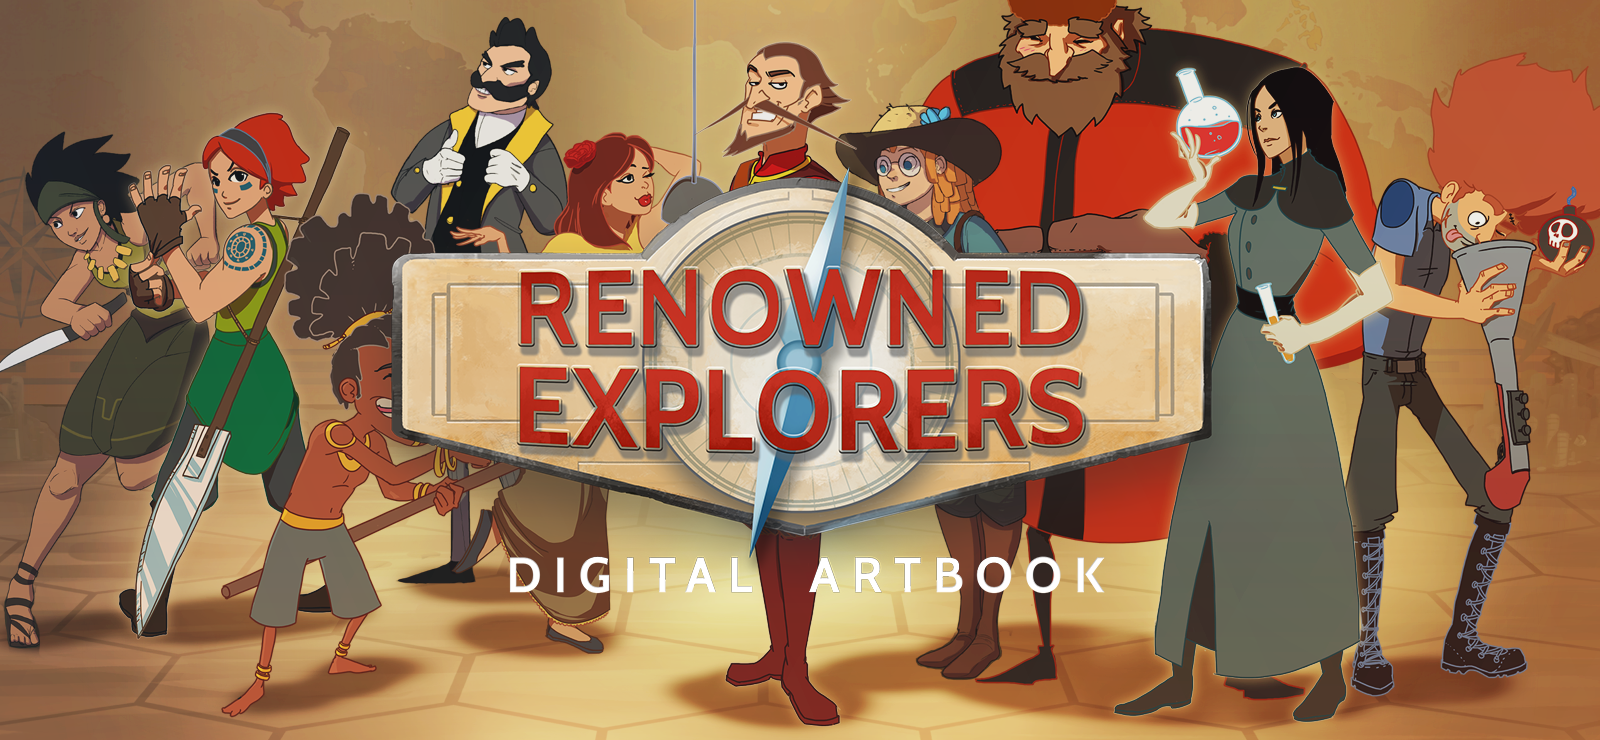 Renowned Explorers - Artbook